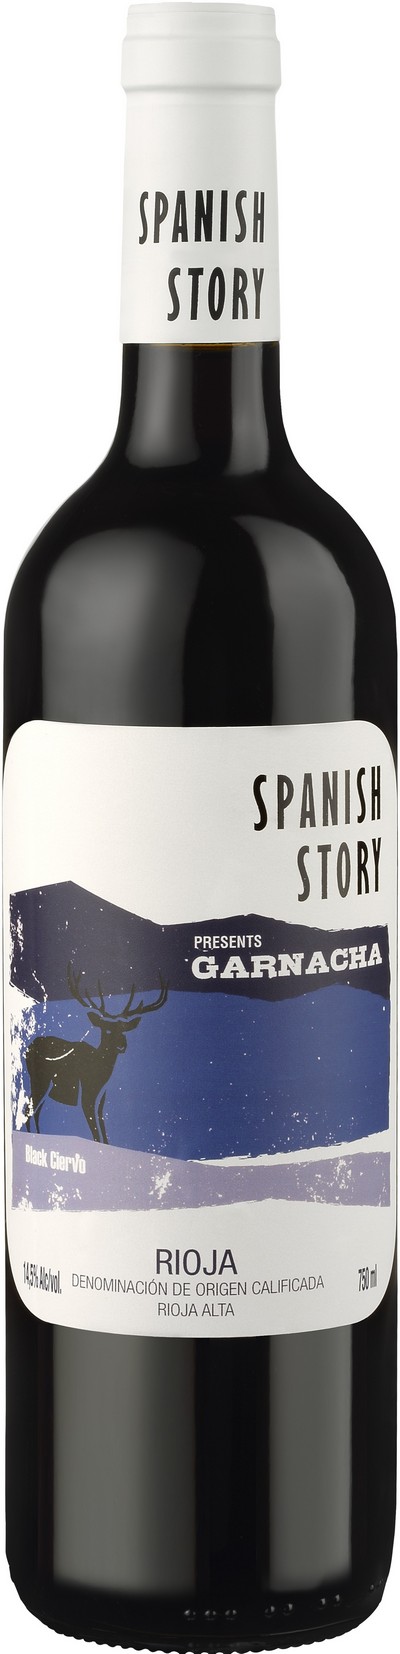 spanish-story-garnacha-2015